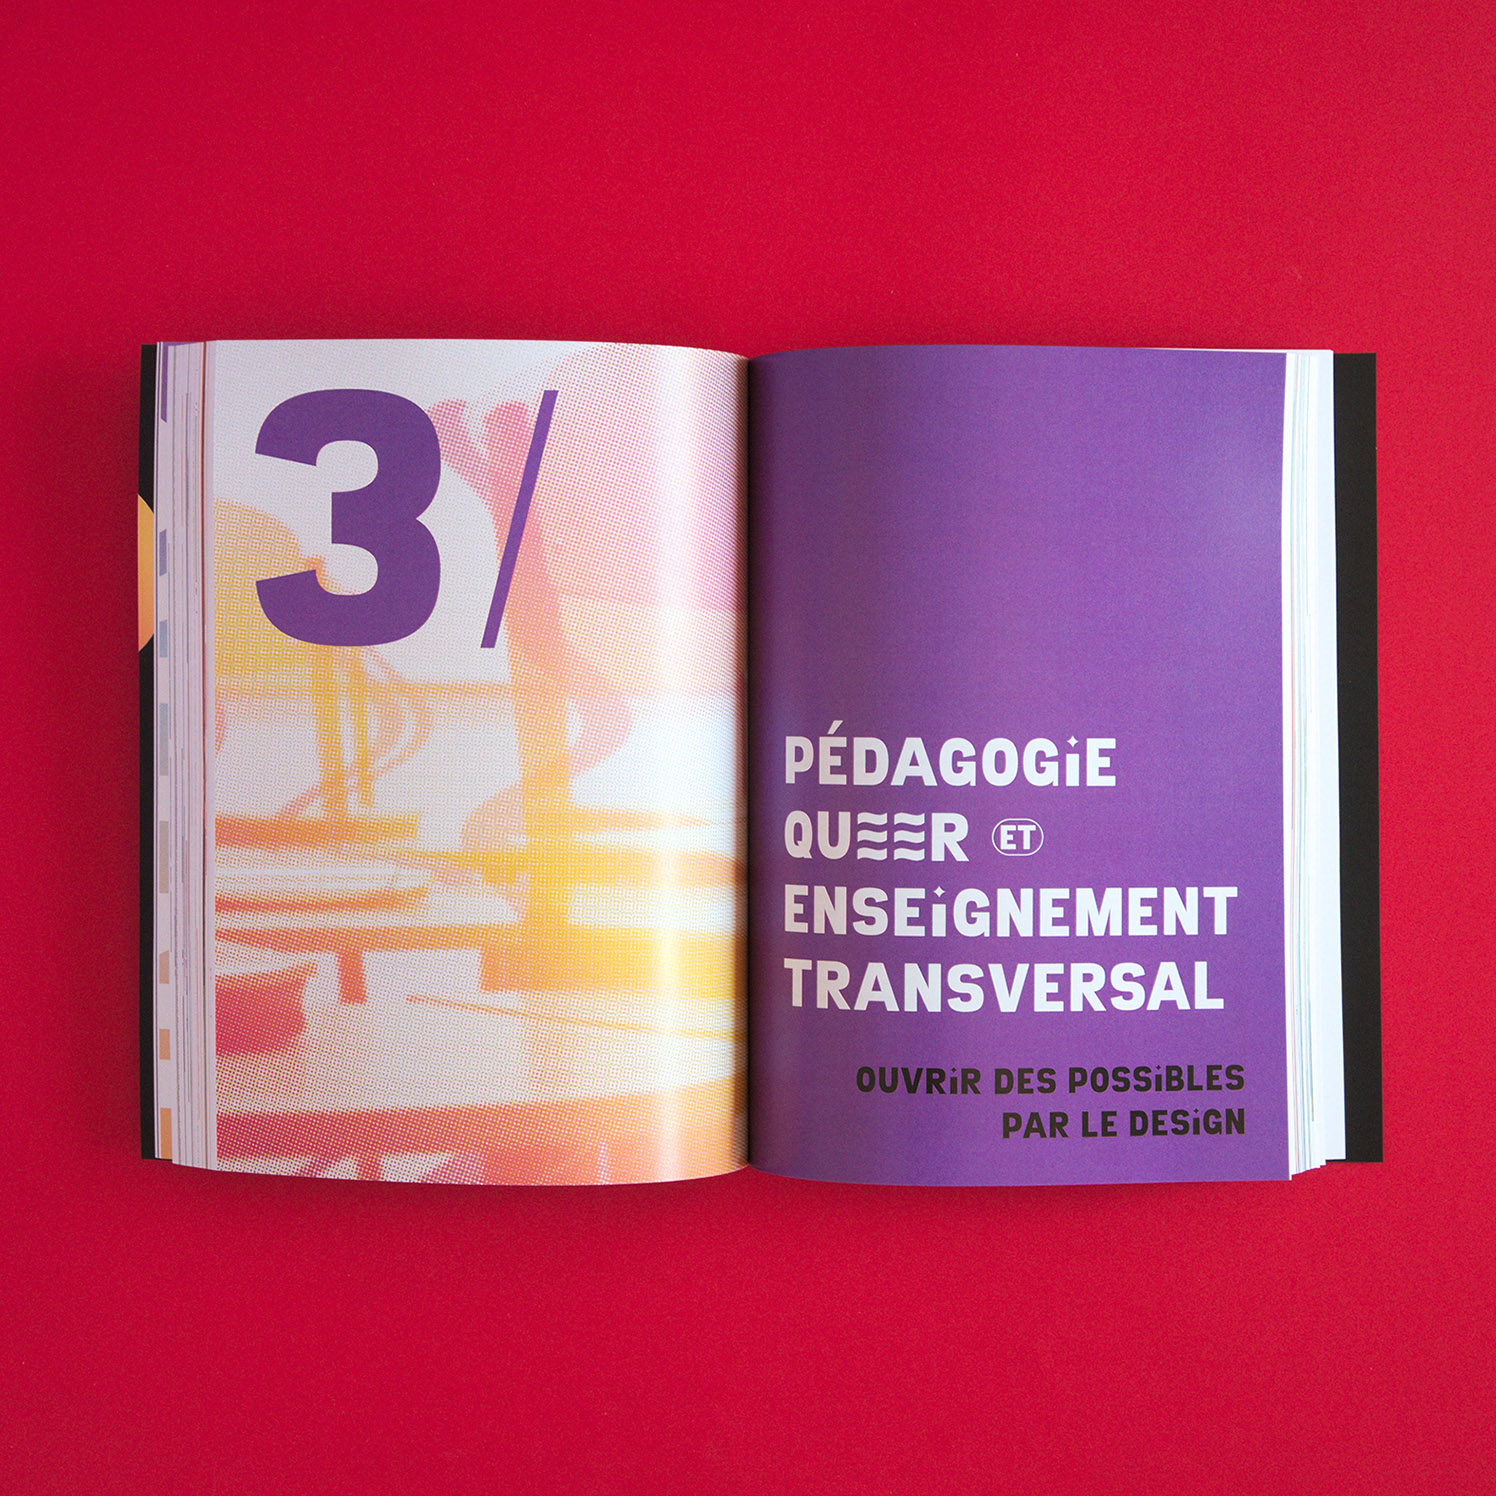 Mémoire Design pour une pédagogie queer (Anna Pavie) : double-page du troisième chapitre "Pédagogie queer et enseignement transversal : ouvrir les possibles par le design"